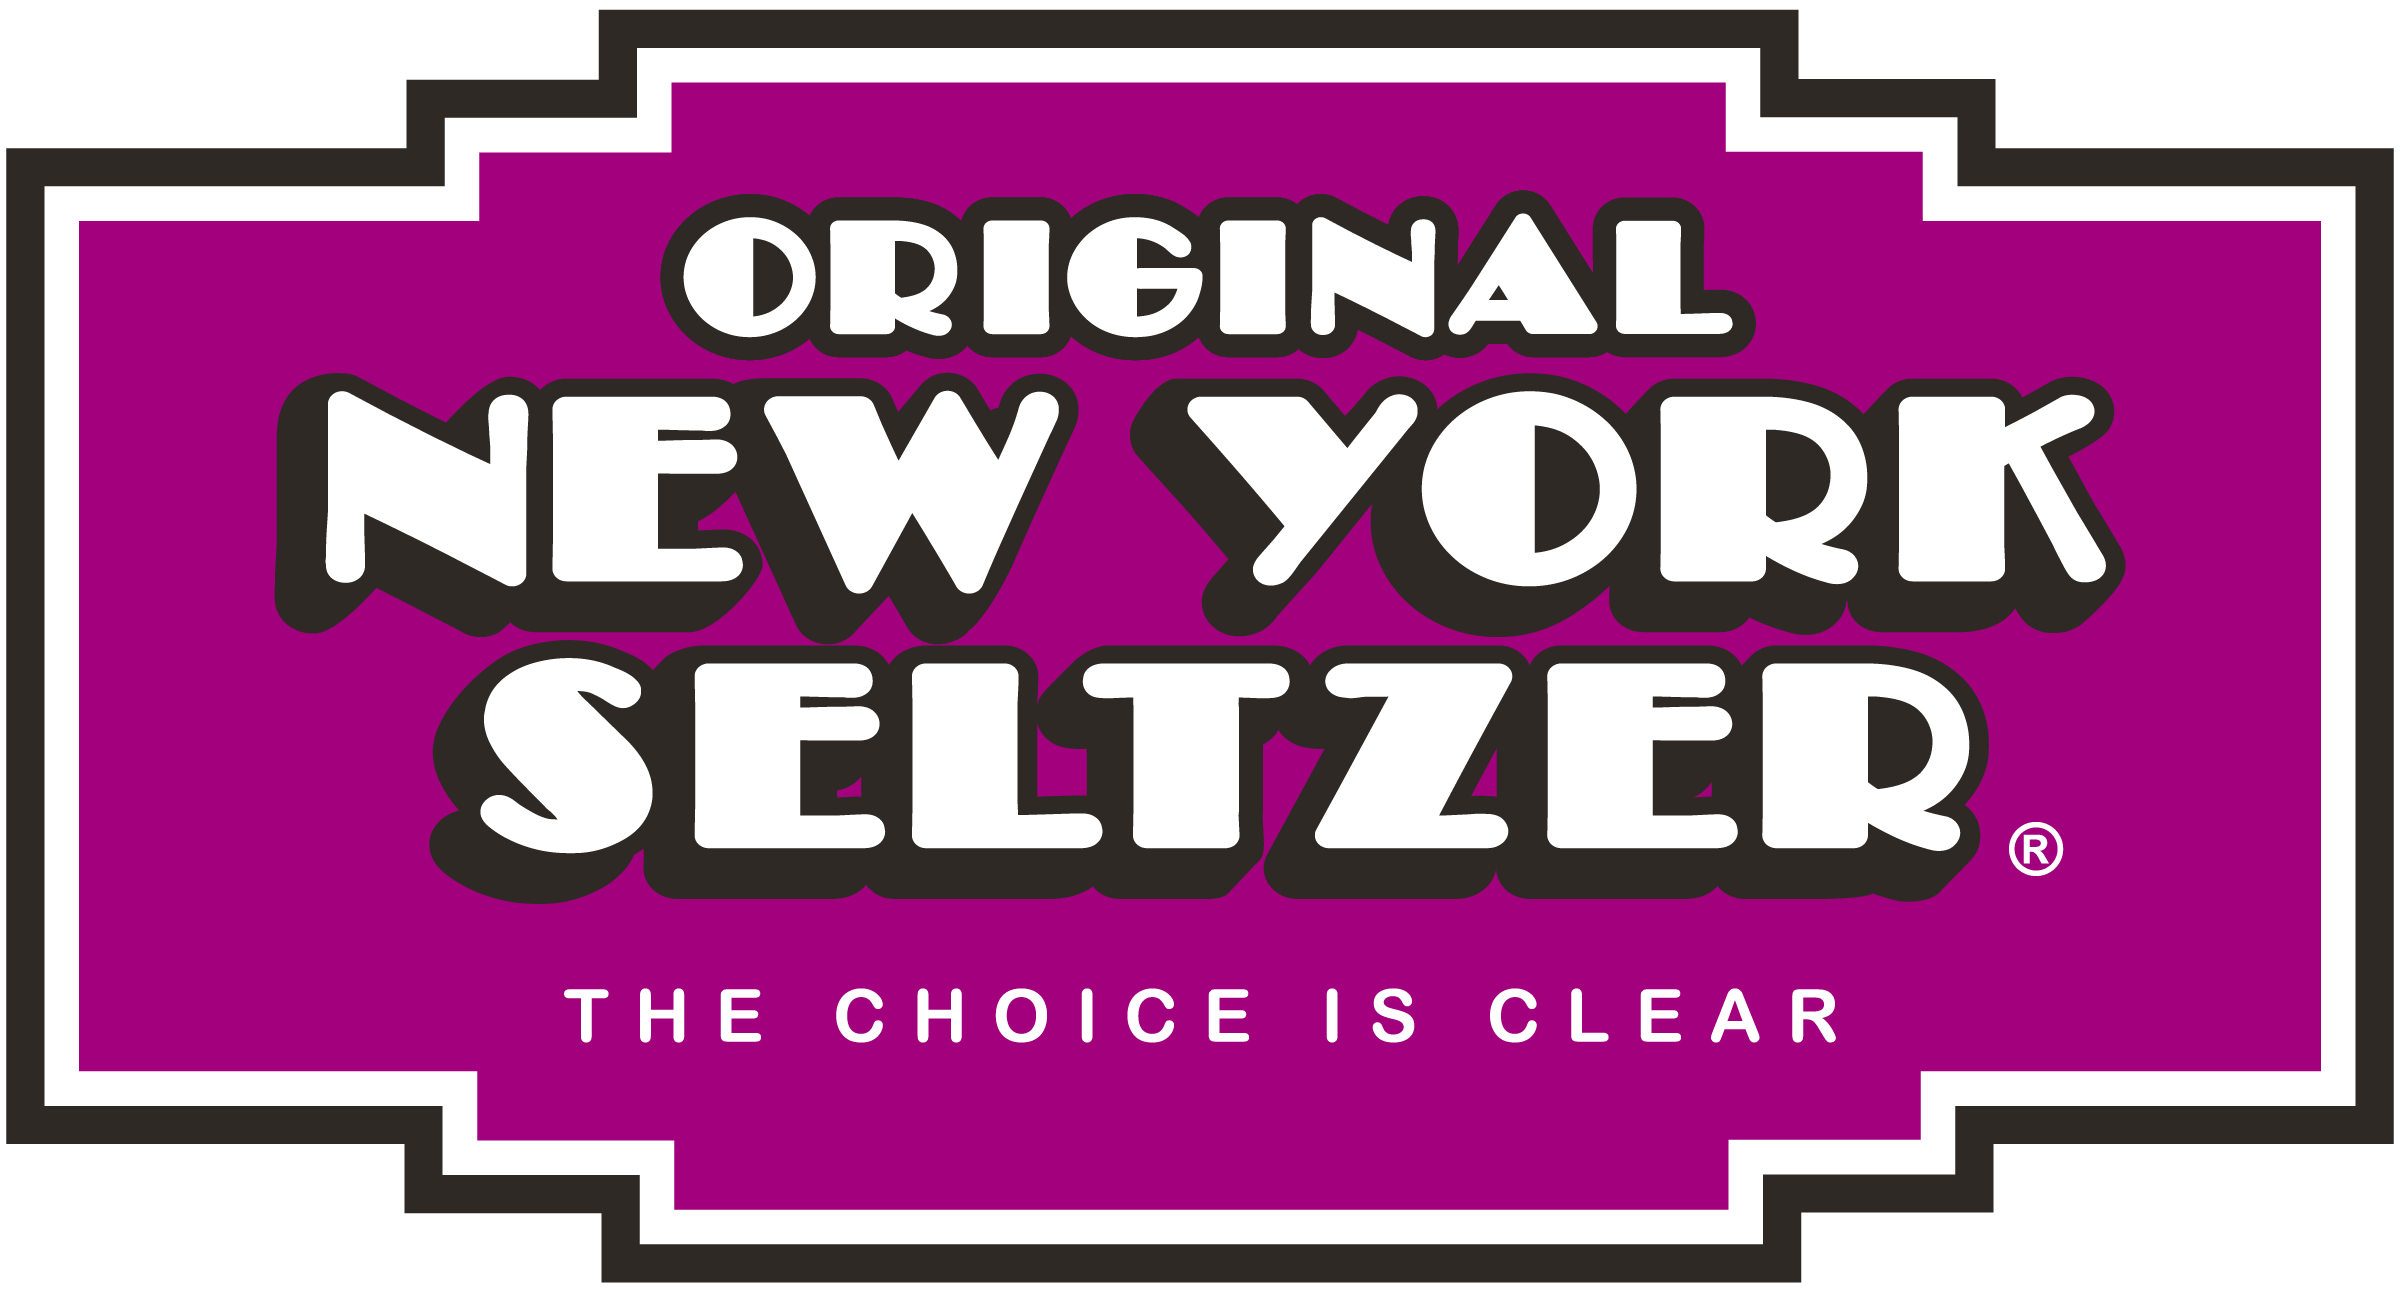 New York Seltzer